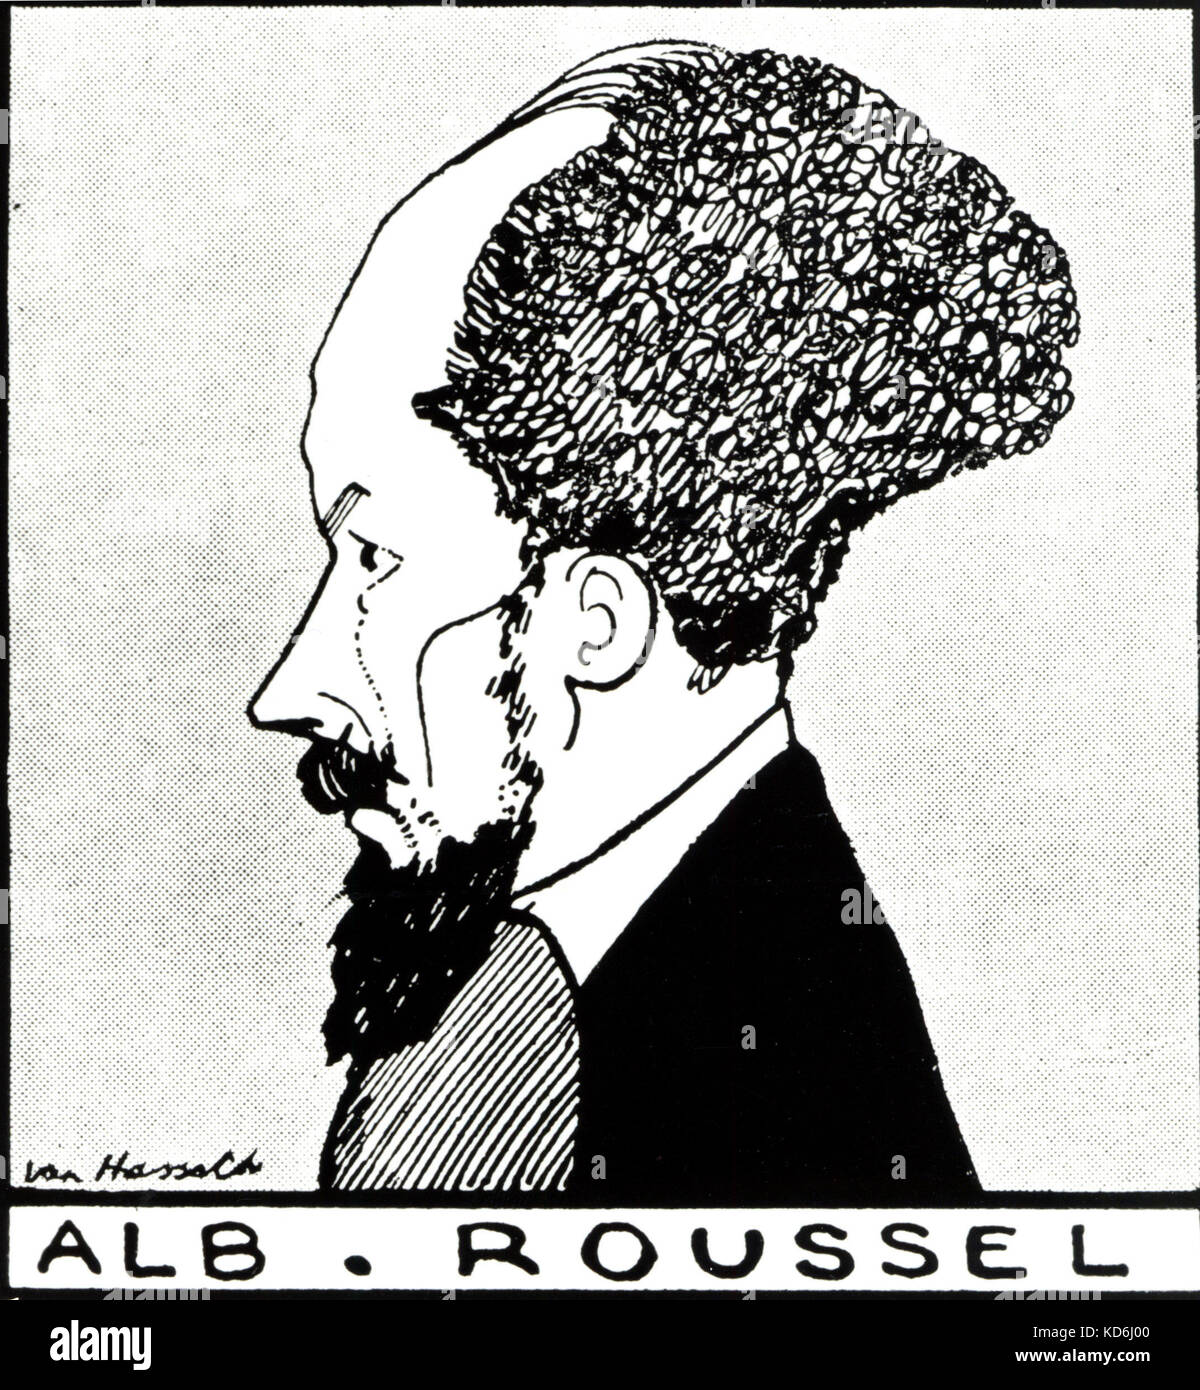 Albert Roussel, el compositor francés, 1869-1937. Dibujo de perfil. Ian Hassack (fecha desconocida) Foto de stock